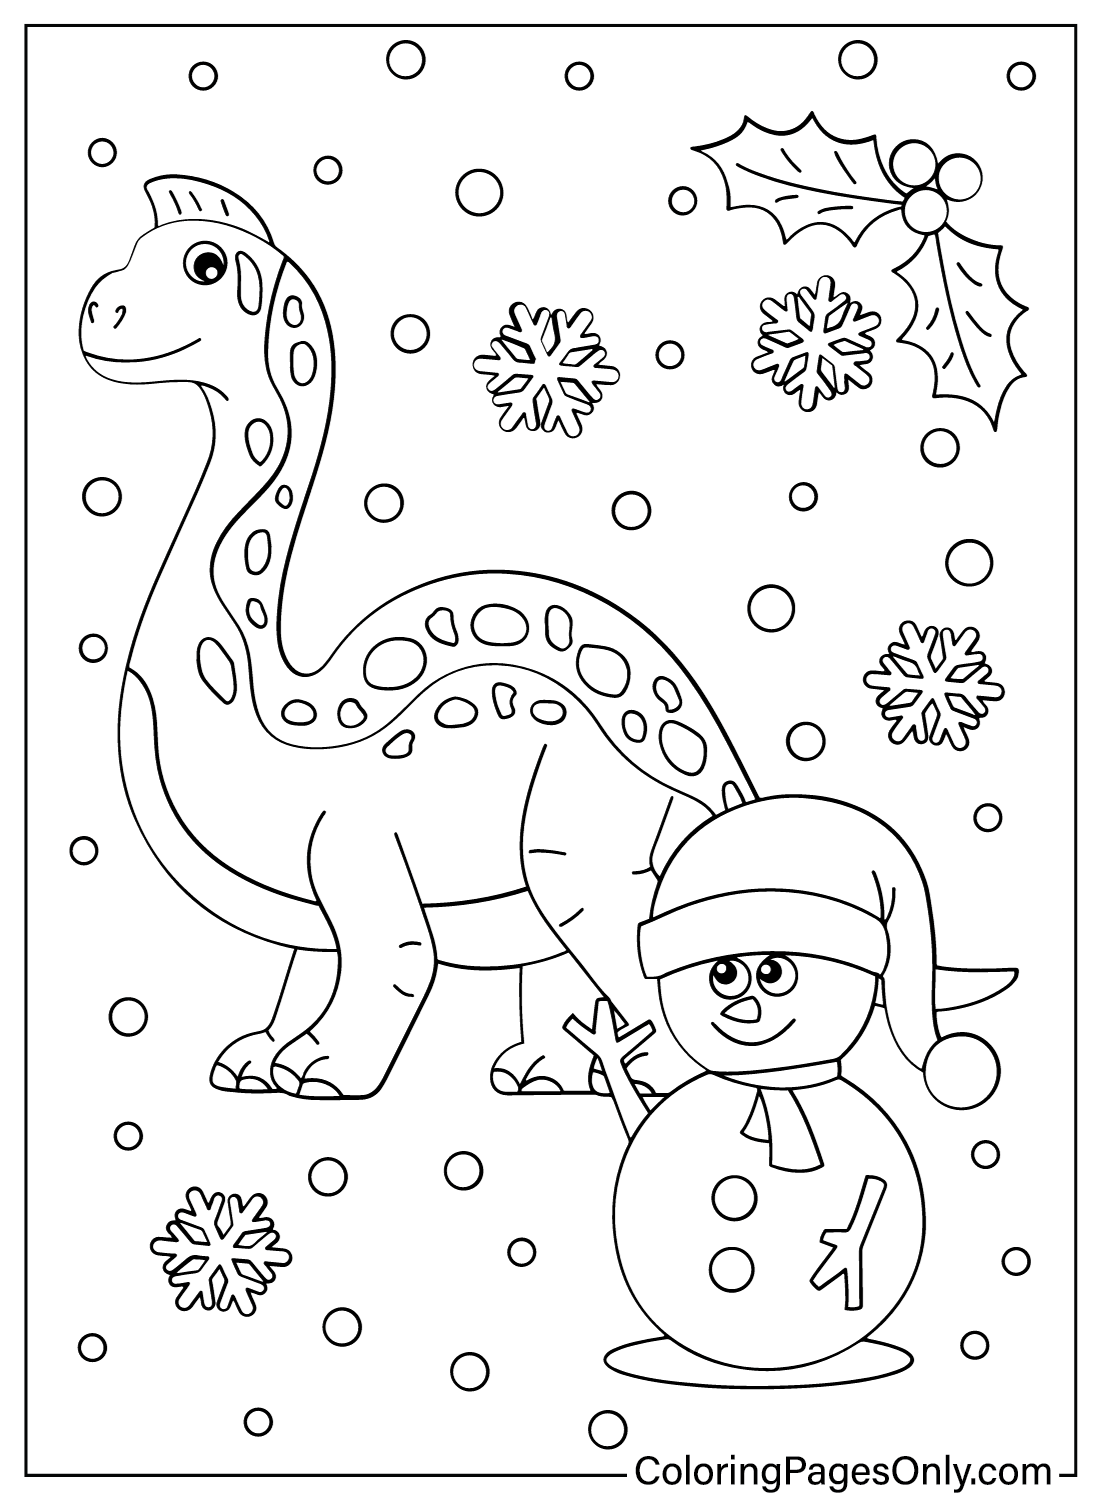 Coloração grátis de dinossauros e bonecos de neve de Natal